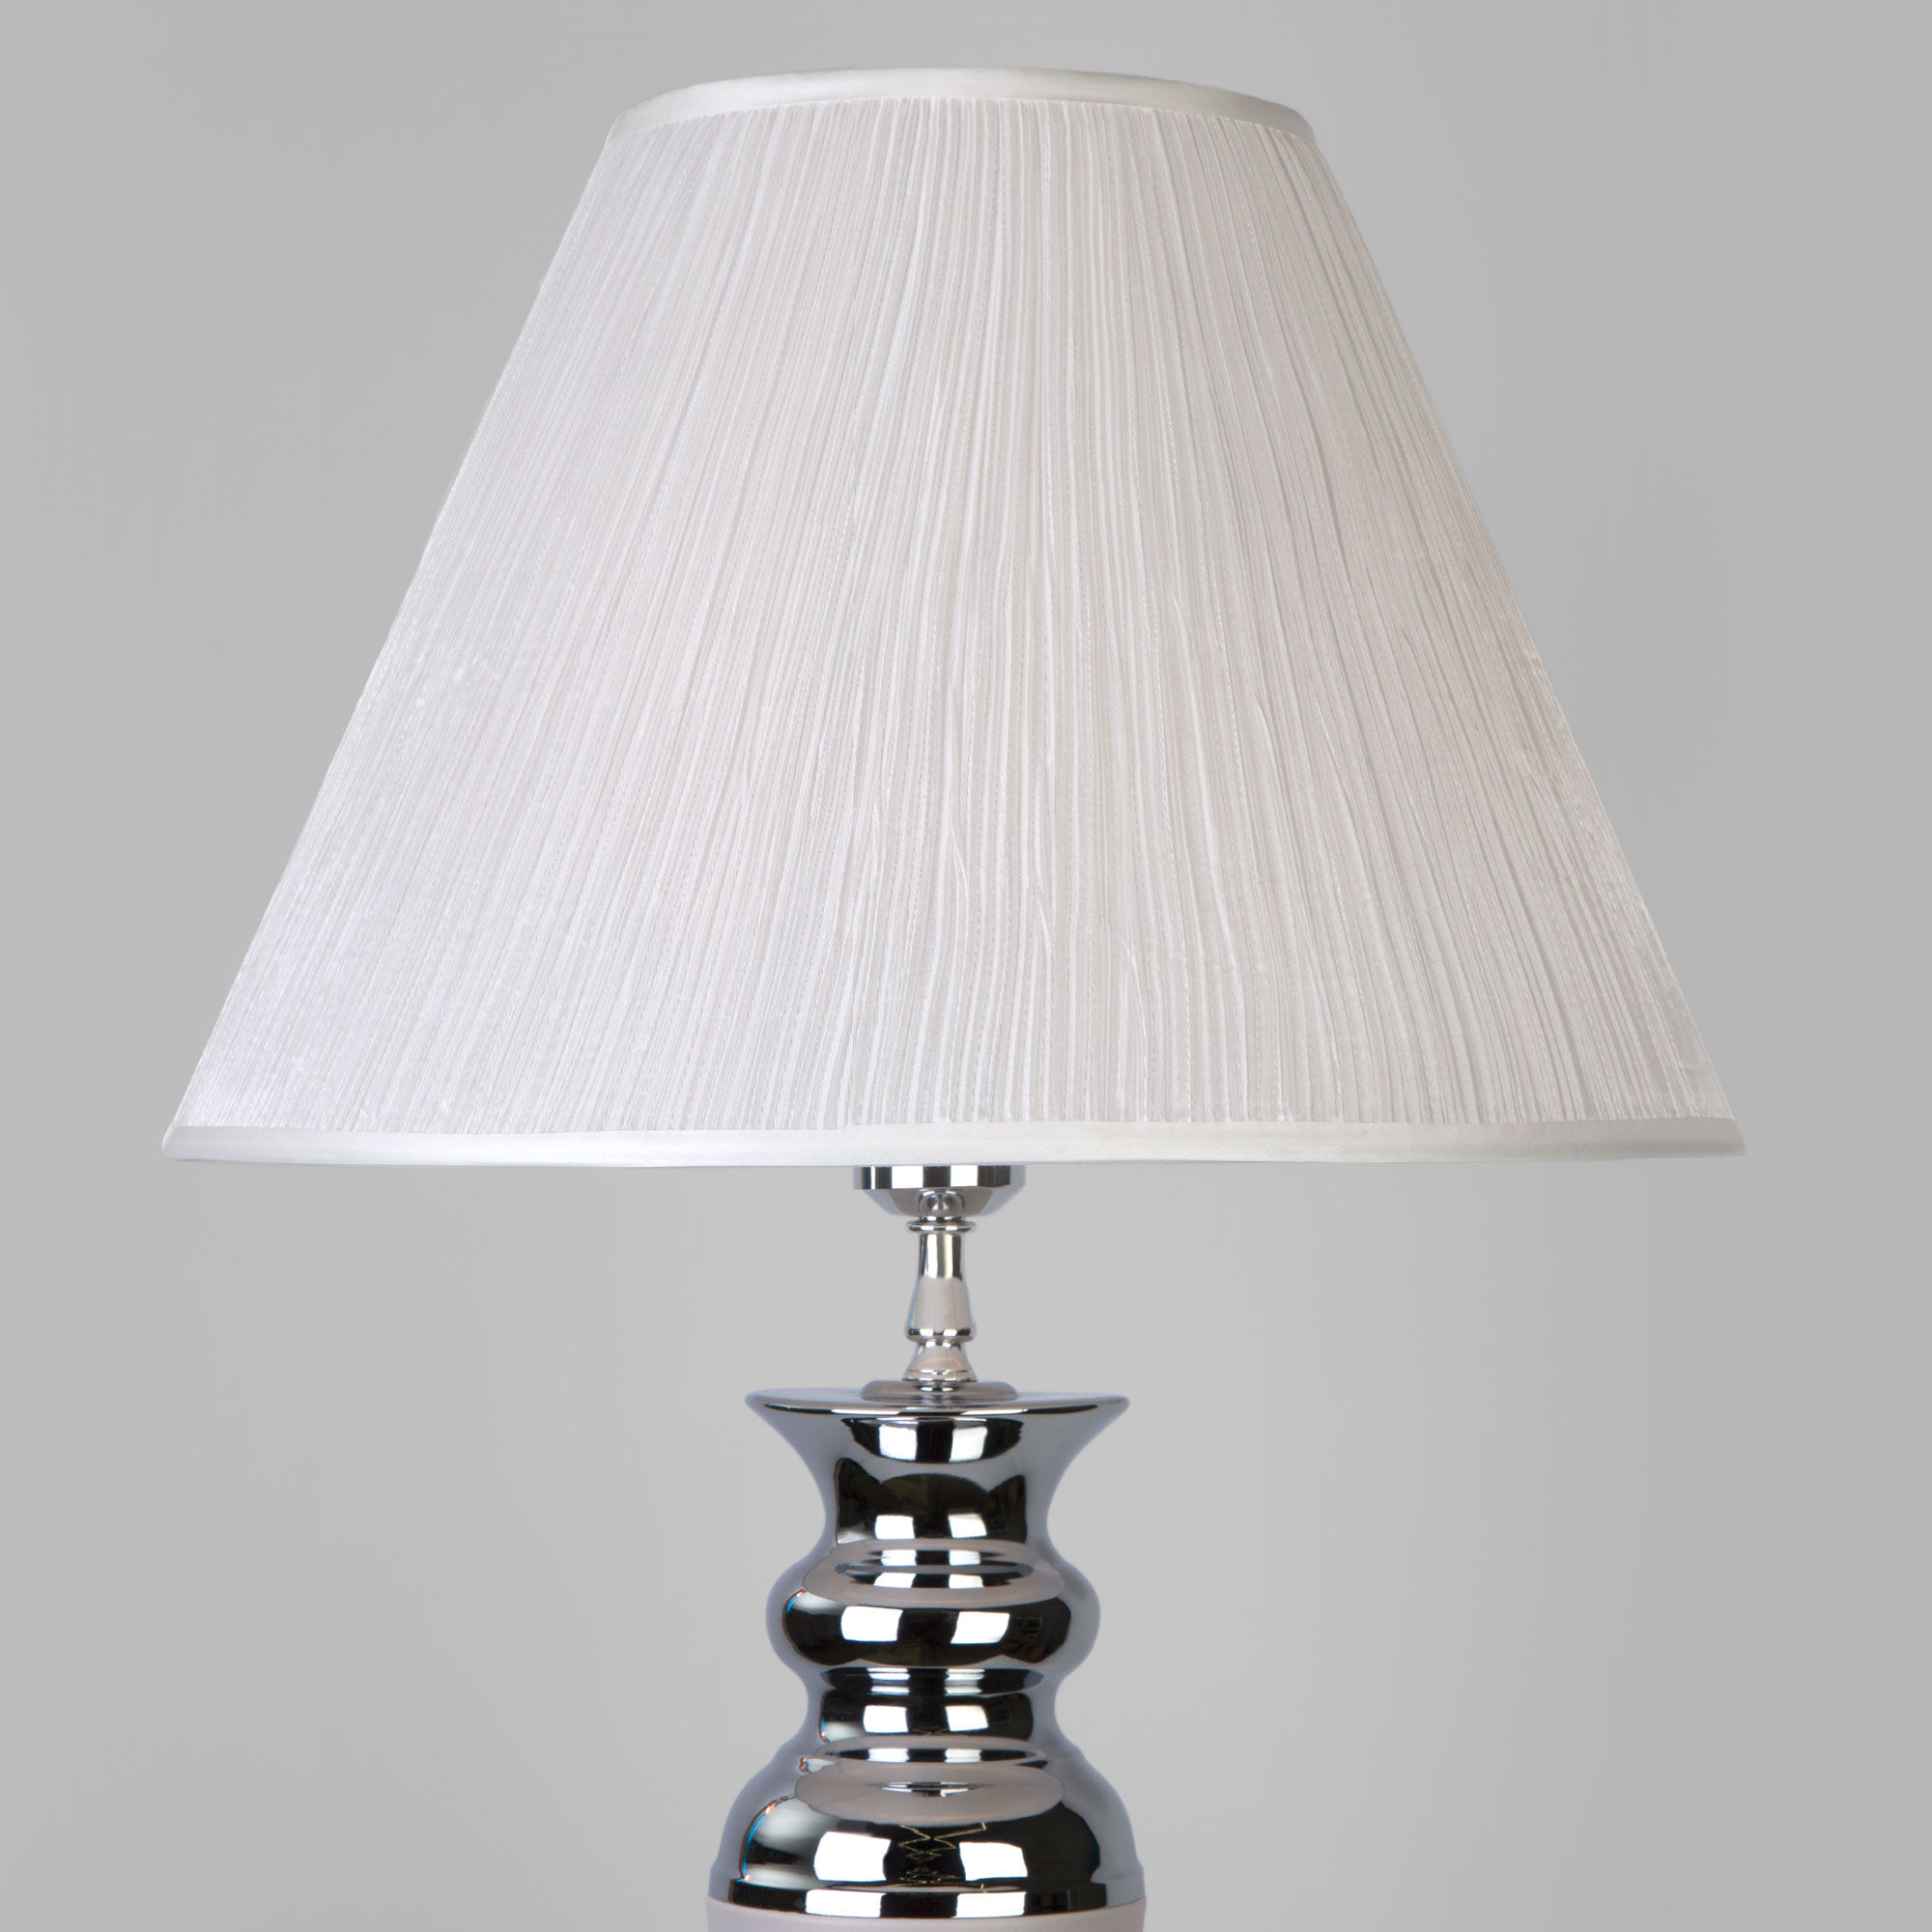 Напольный светильник с тканевым абажуром Eurosvet Majorka 009 белый. Фото 2